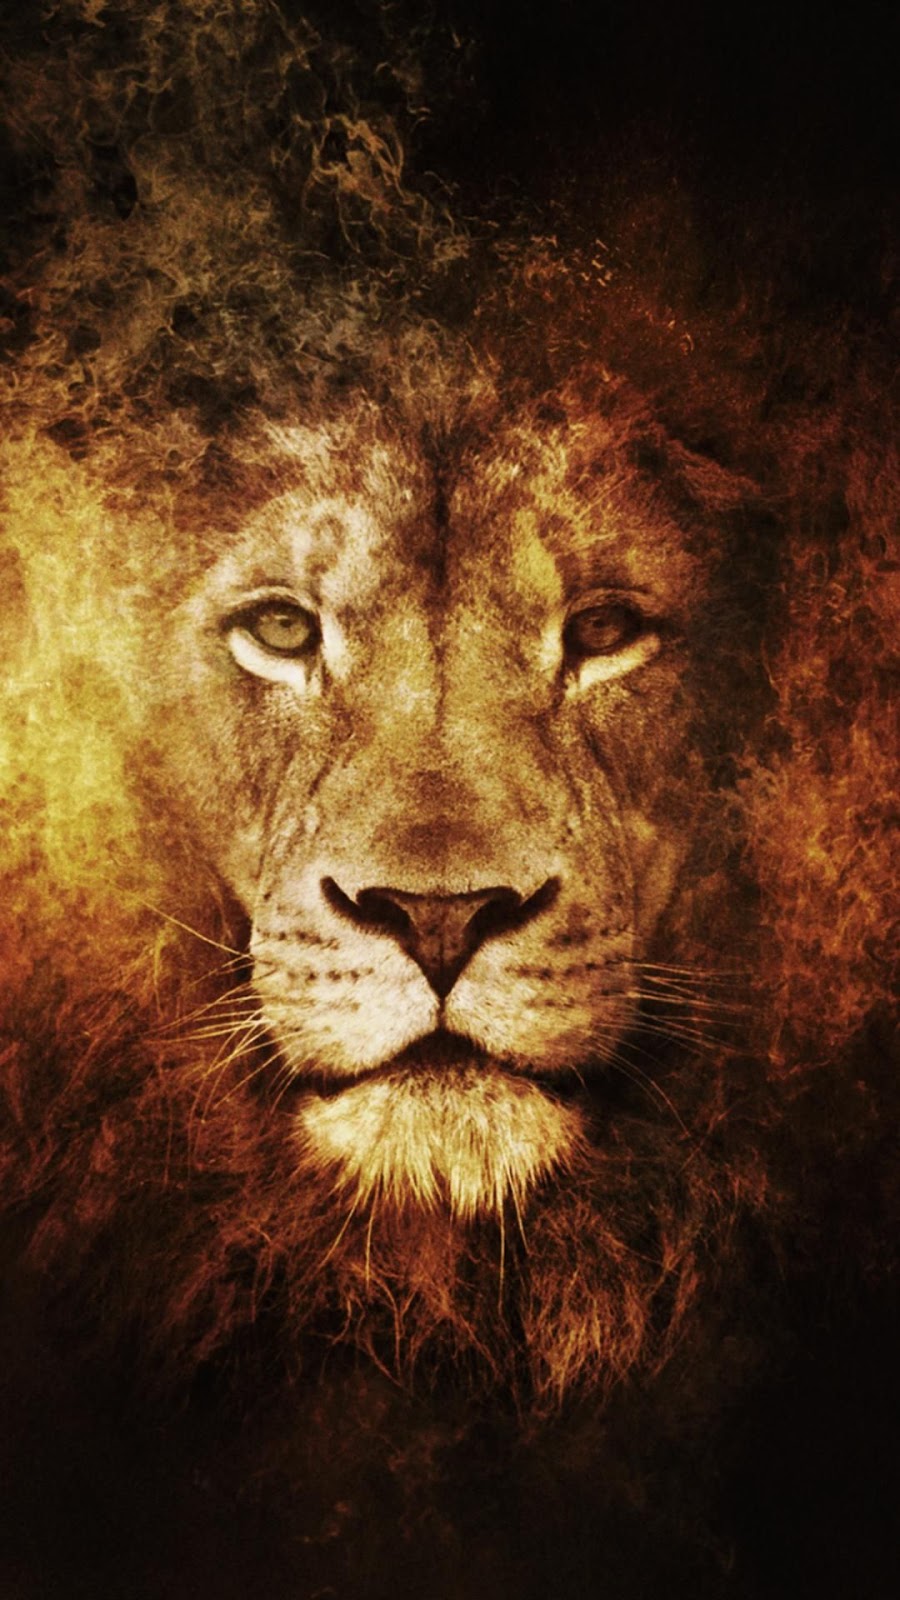 Best Lion Wallpaper High Quality |HD Desktop, Iphone | Animals